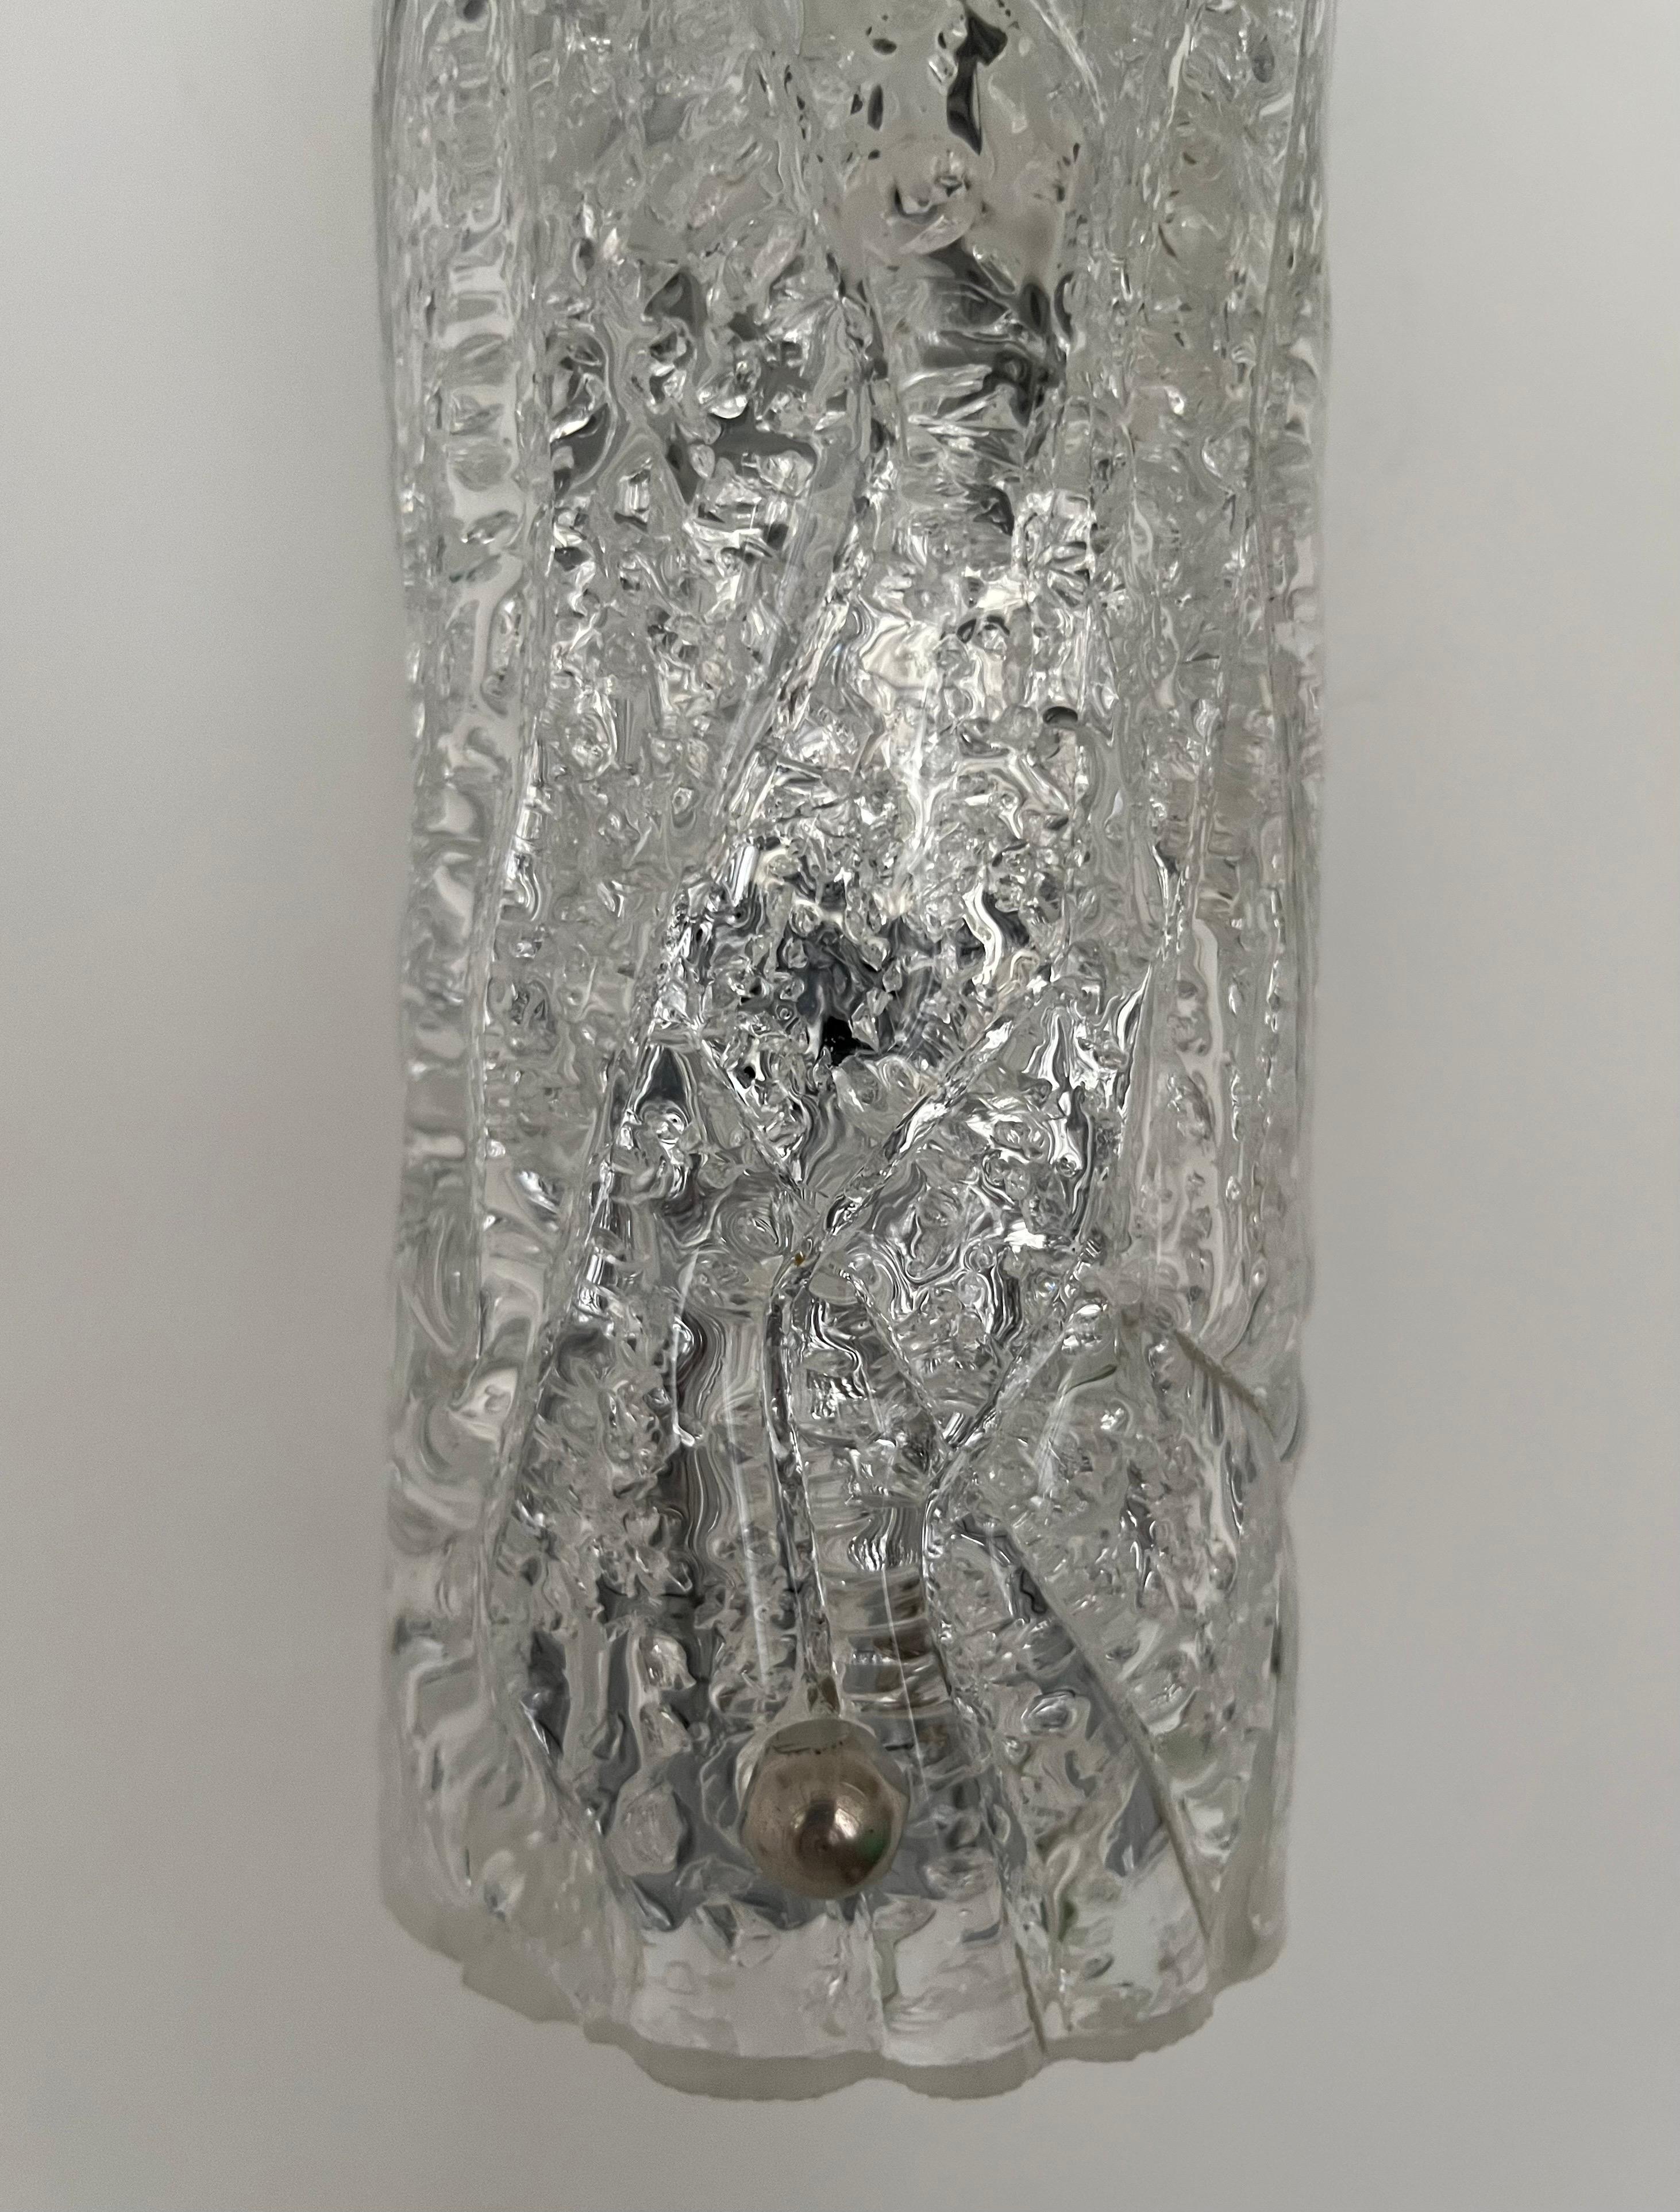 Atemberaubende und Schönheit Pair of Murano Ice-Glas Wandleuchten von Hillebrand Leuchten. Diese Armaturen wurden in den 1970er Jahren in Deutschland entworfen und hergestellt. Modell 8527-211.
Jeder Wandleuchter besteht aus einer Metallstruktur und